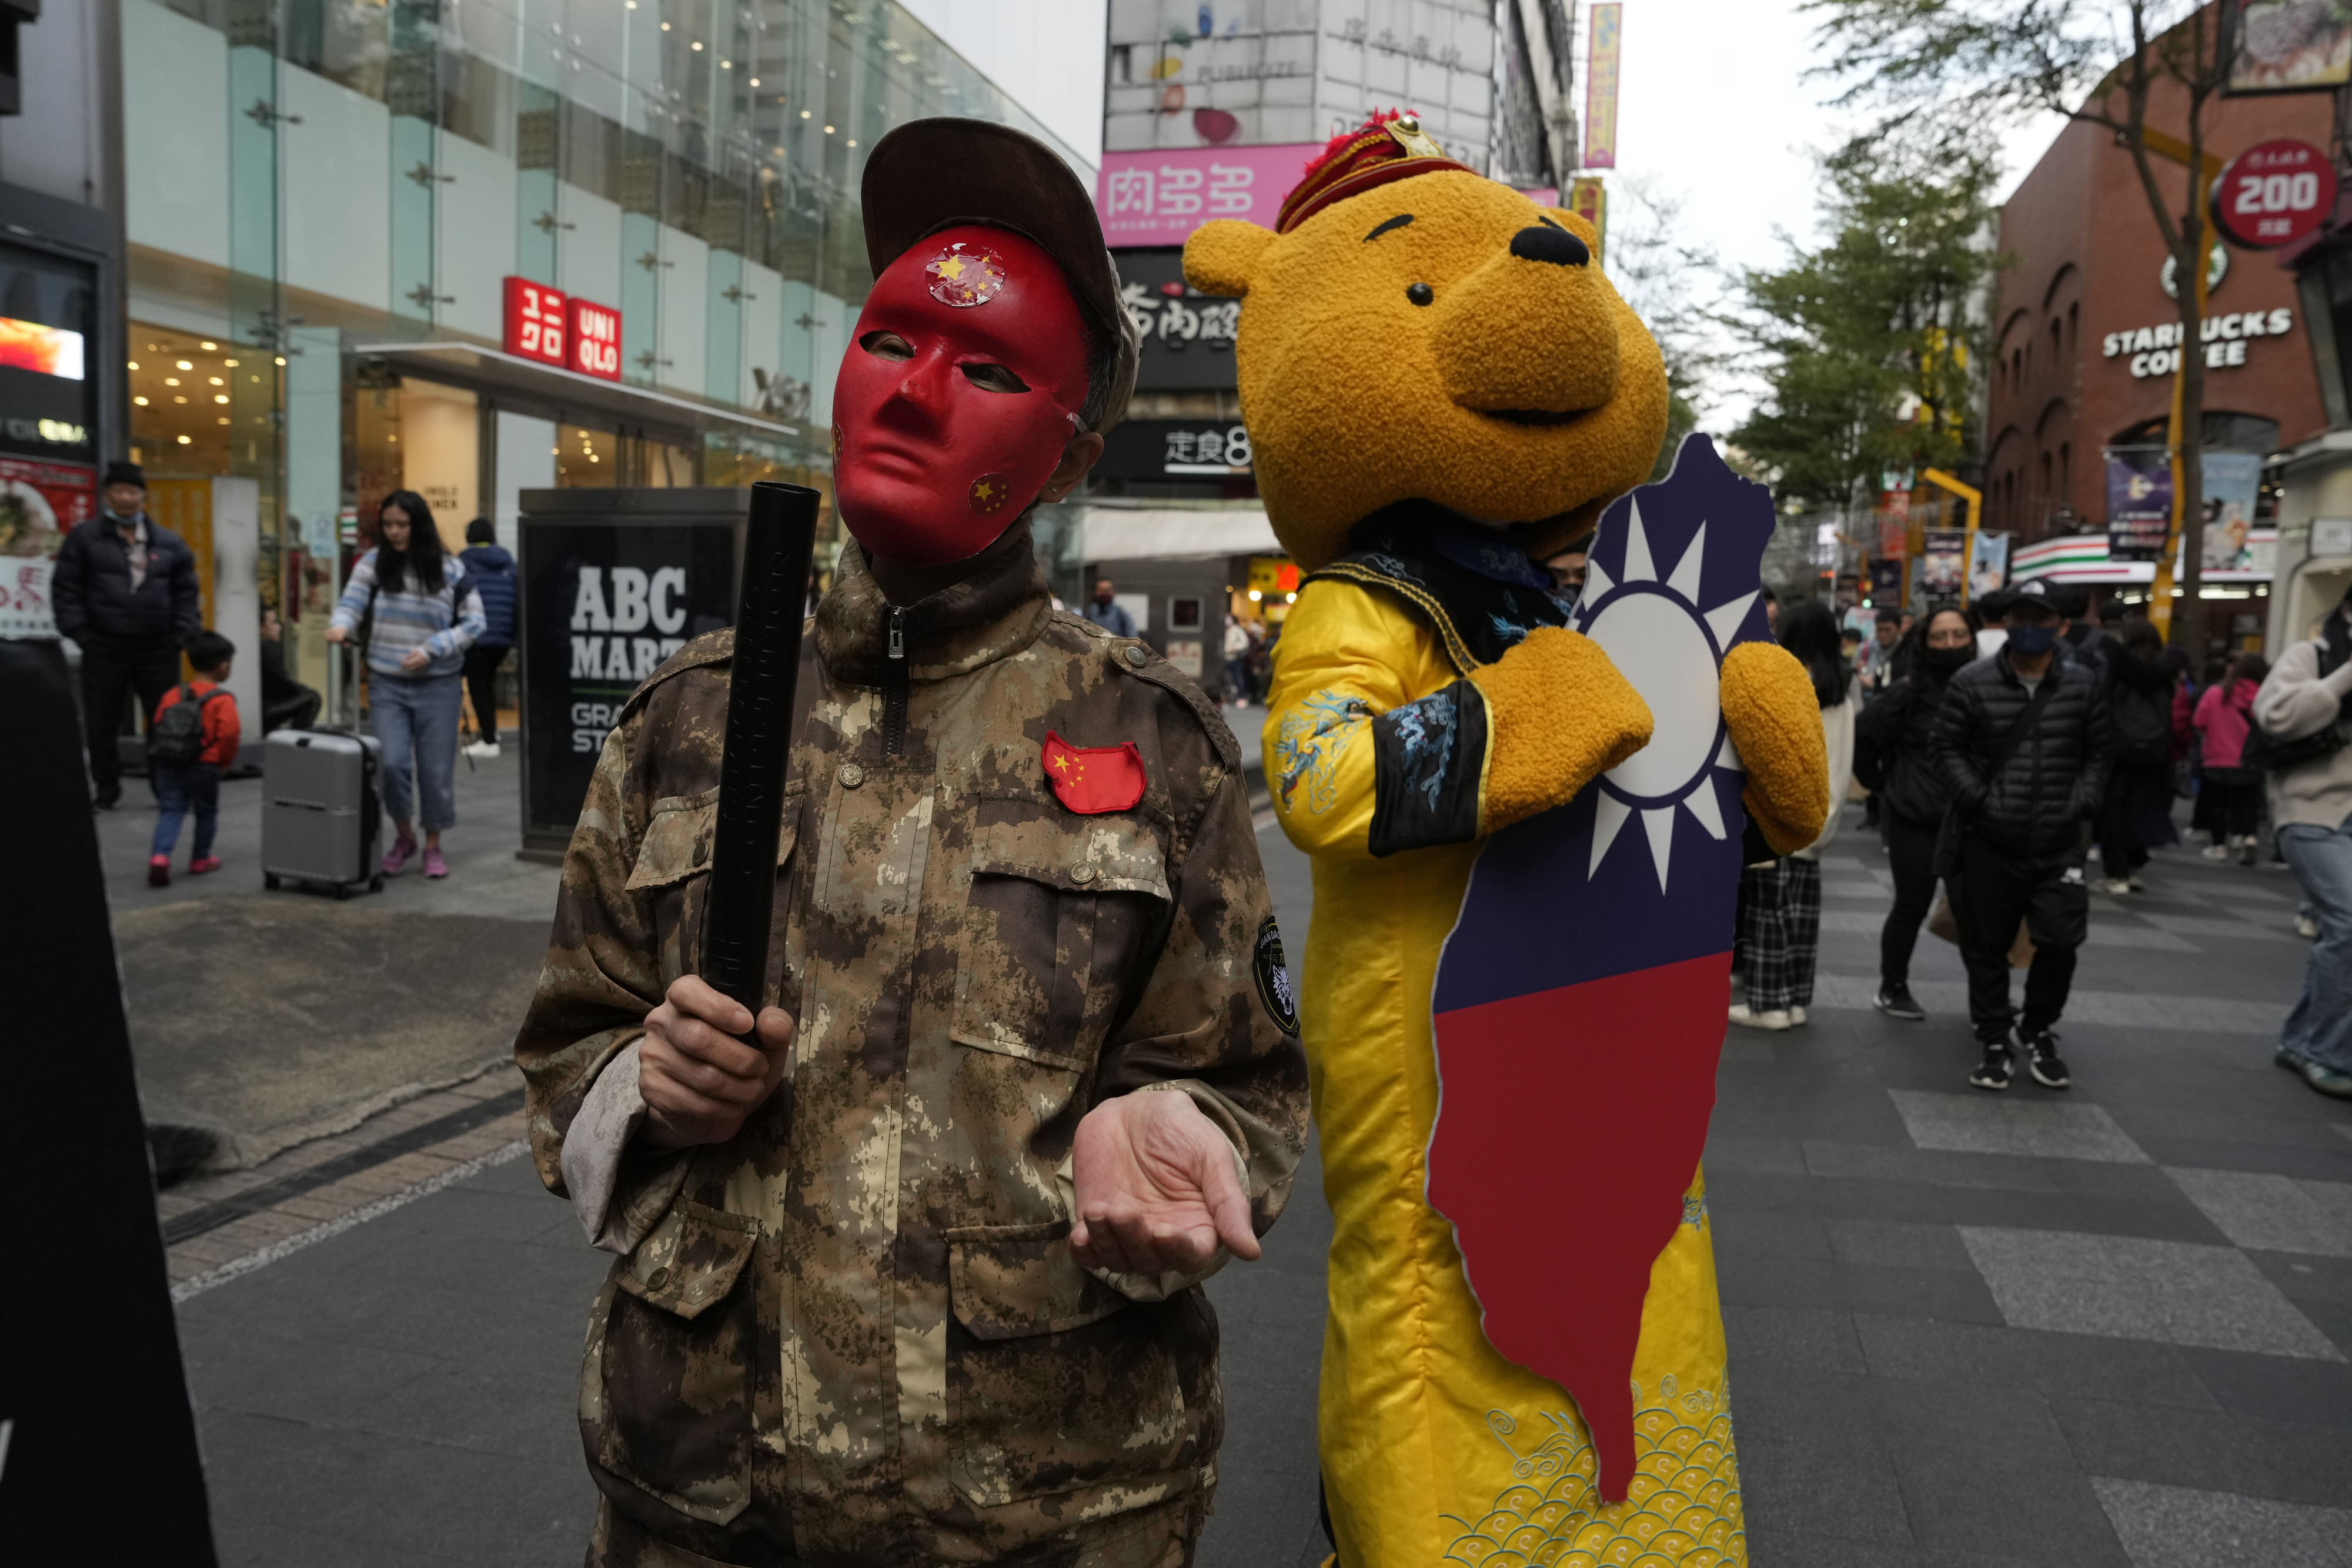 지난 7일(현지시간) 대만 타이베이에서 열린 친중 세력 집권 반대 시위에서 참가자들이 군복을 입은 채 곰돌이 푸 탈을 쓰고 있다. 한때 시진핑 중국 국가주석에게는 ‘푸’라는 별명이 붙기도 했다. 타이베이 AP 연합뉴스